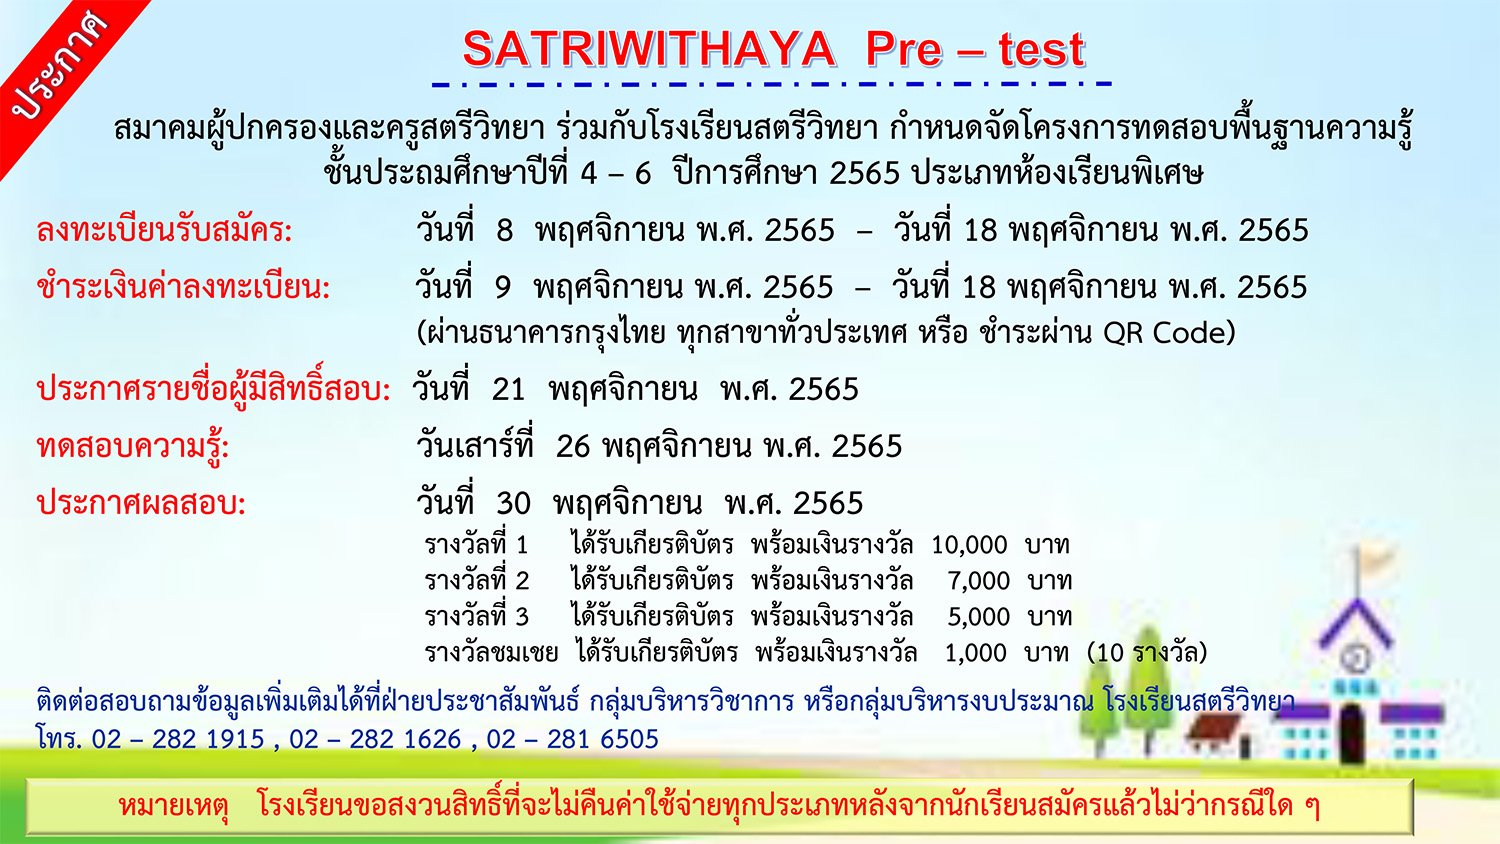 SATRIWITHAYA Pre-test โครงการทดสอบความรู้ ชั้นประถมศึกษาปีที่ 4-6 โรงเรียนสตรีวิทยา ปี 2565